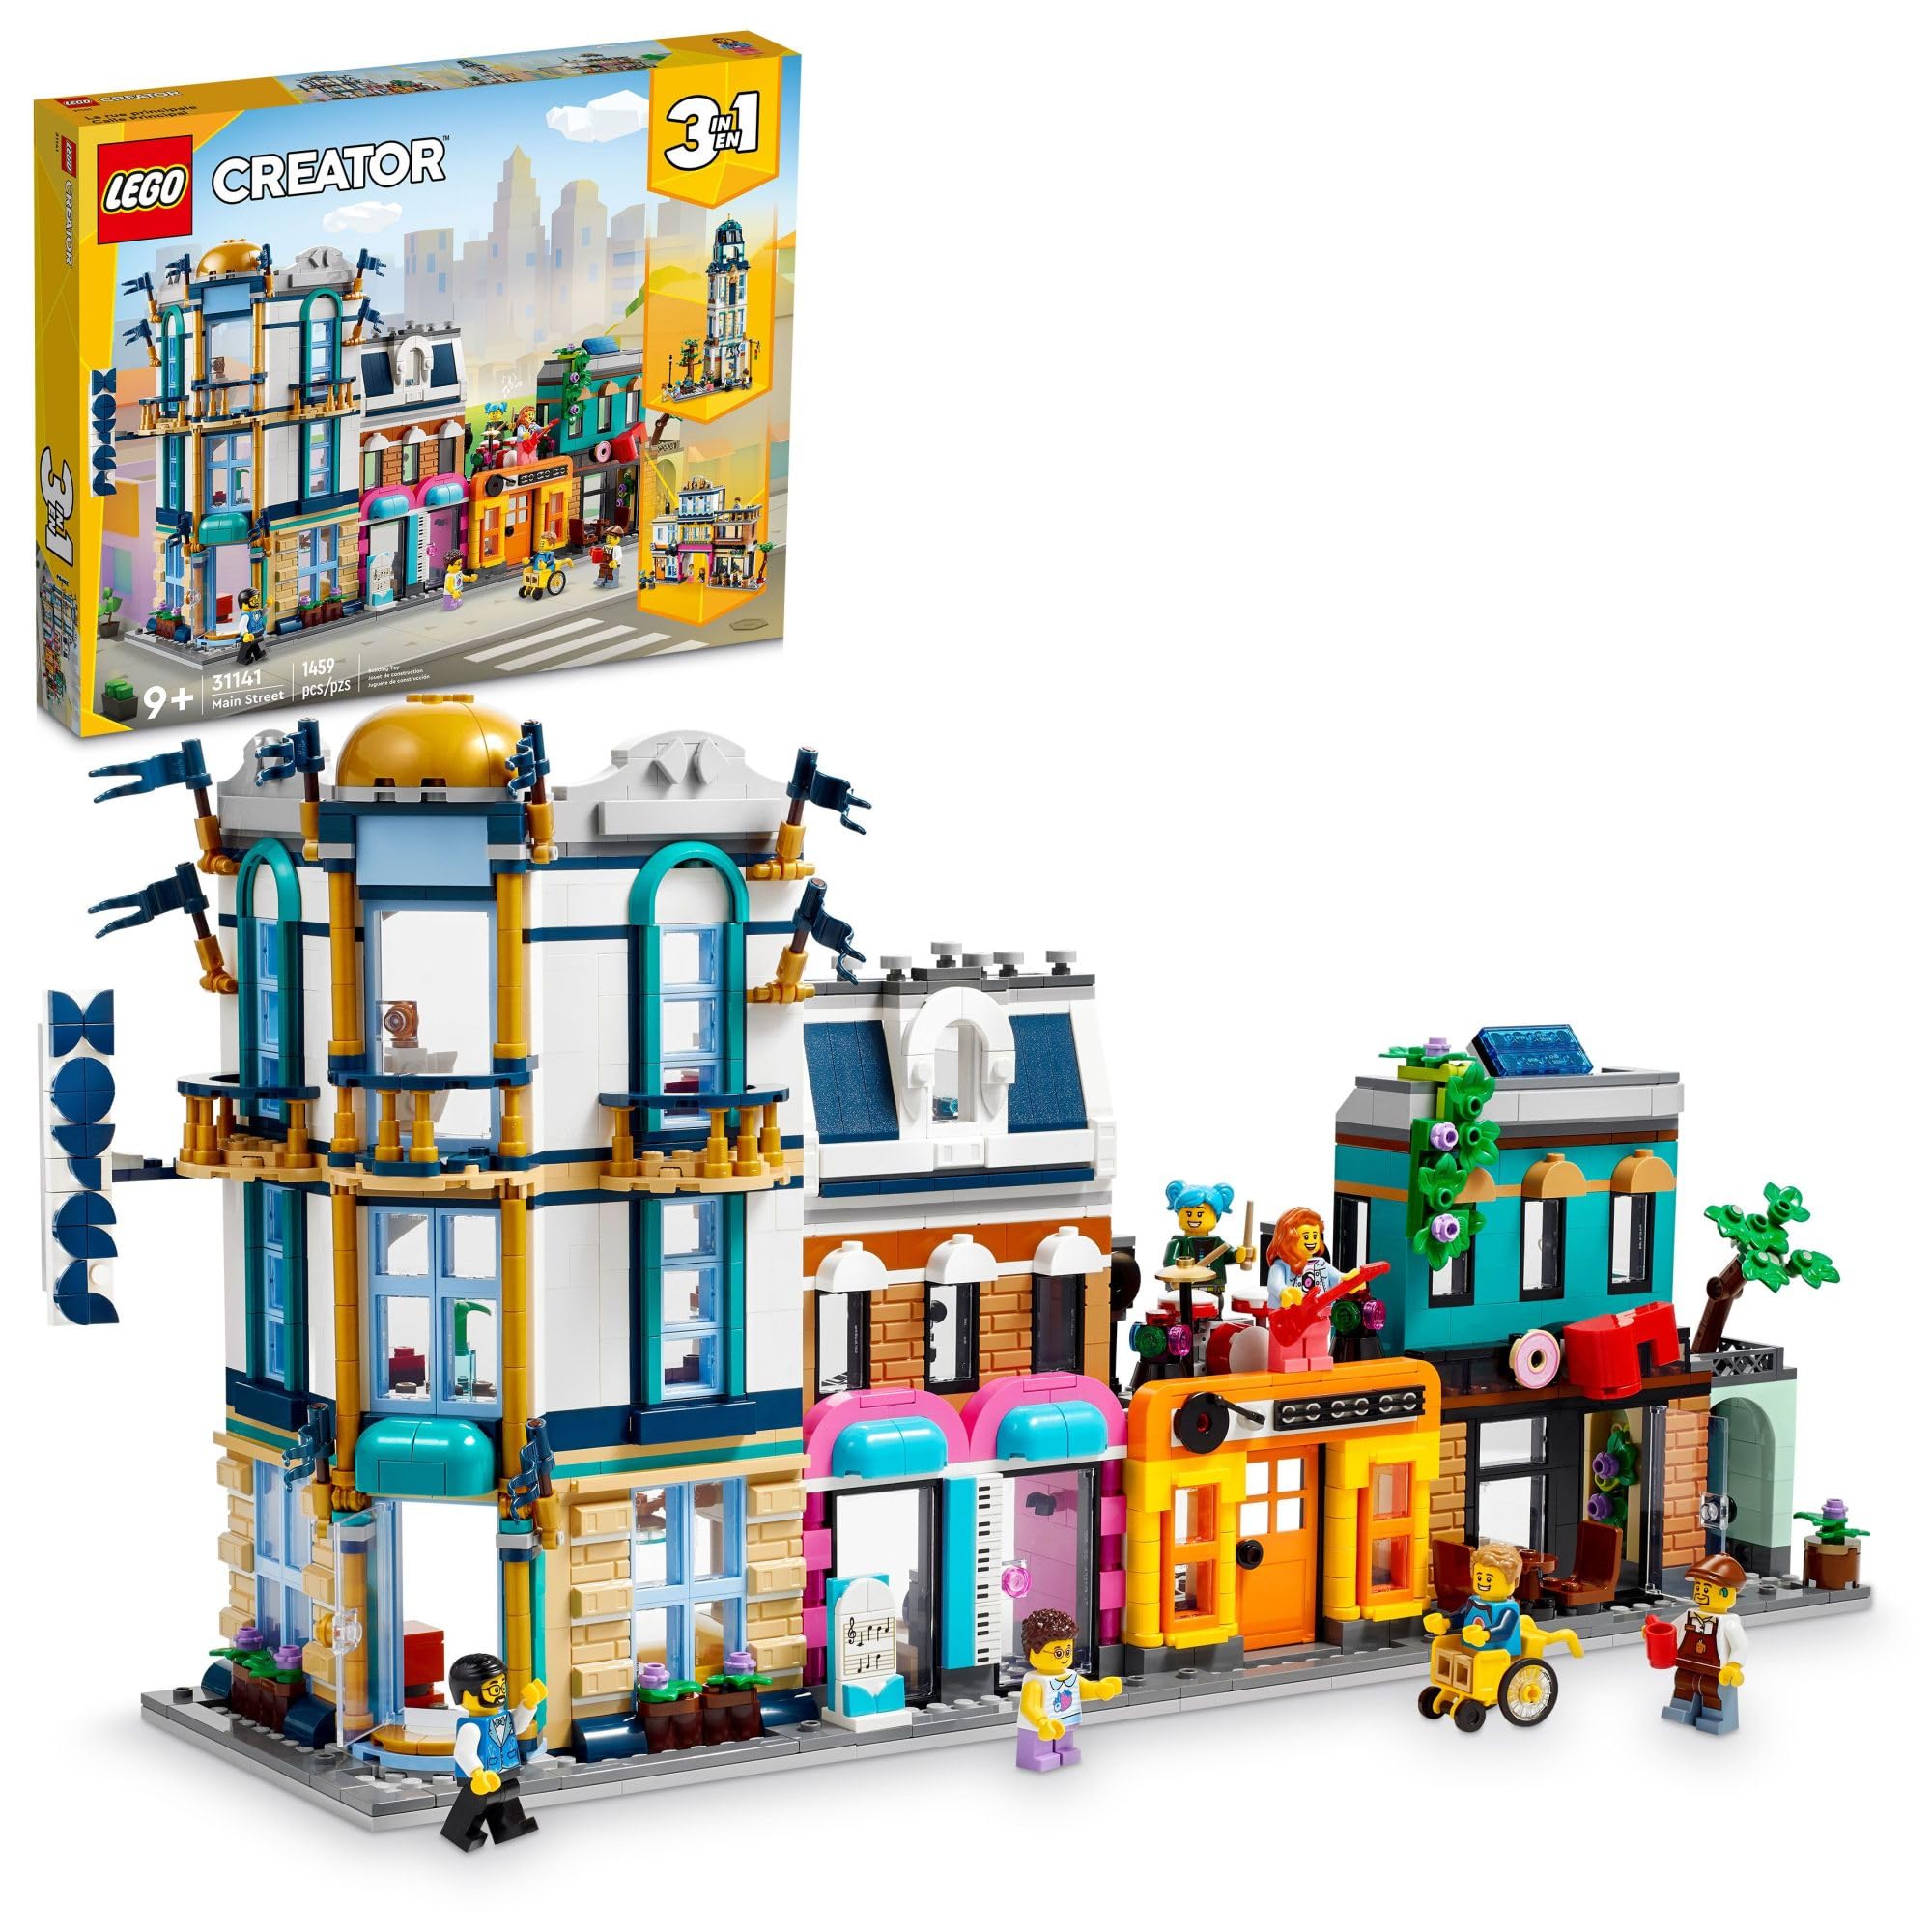 史低价！LEGO乐高 Creator创意百变系列 31141 城镇大街，原价$139.99，现仅售$90.89，免运费！